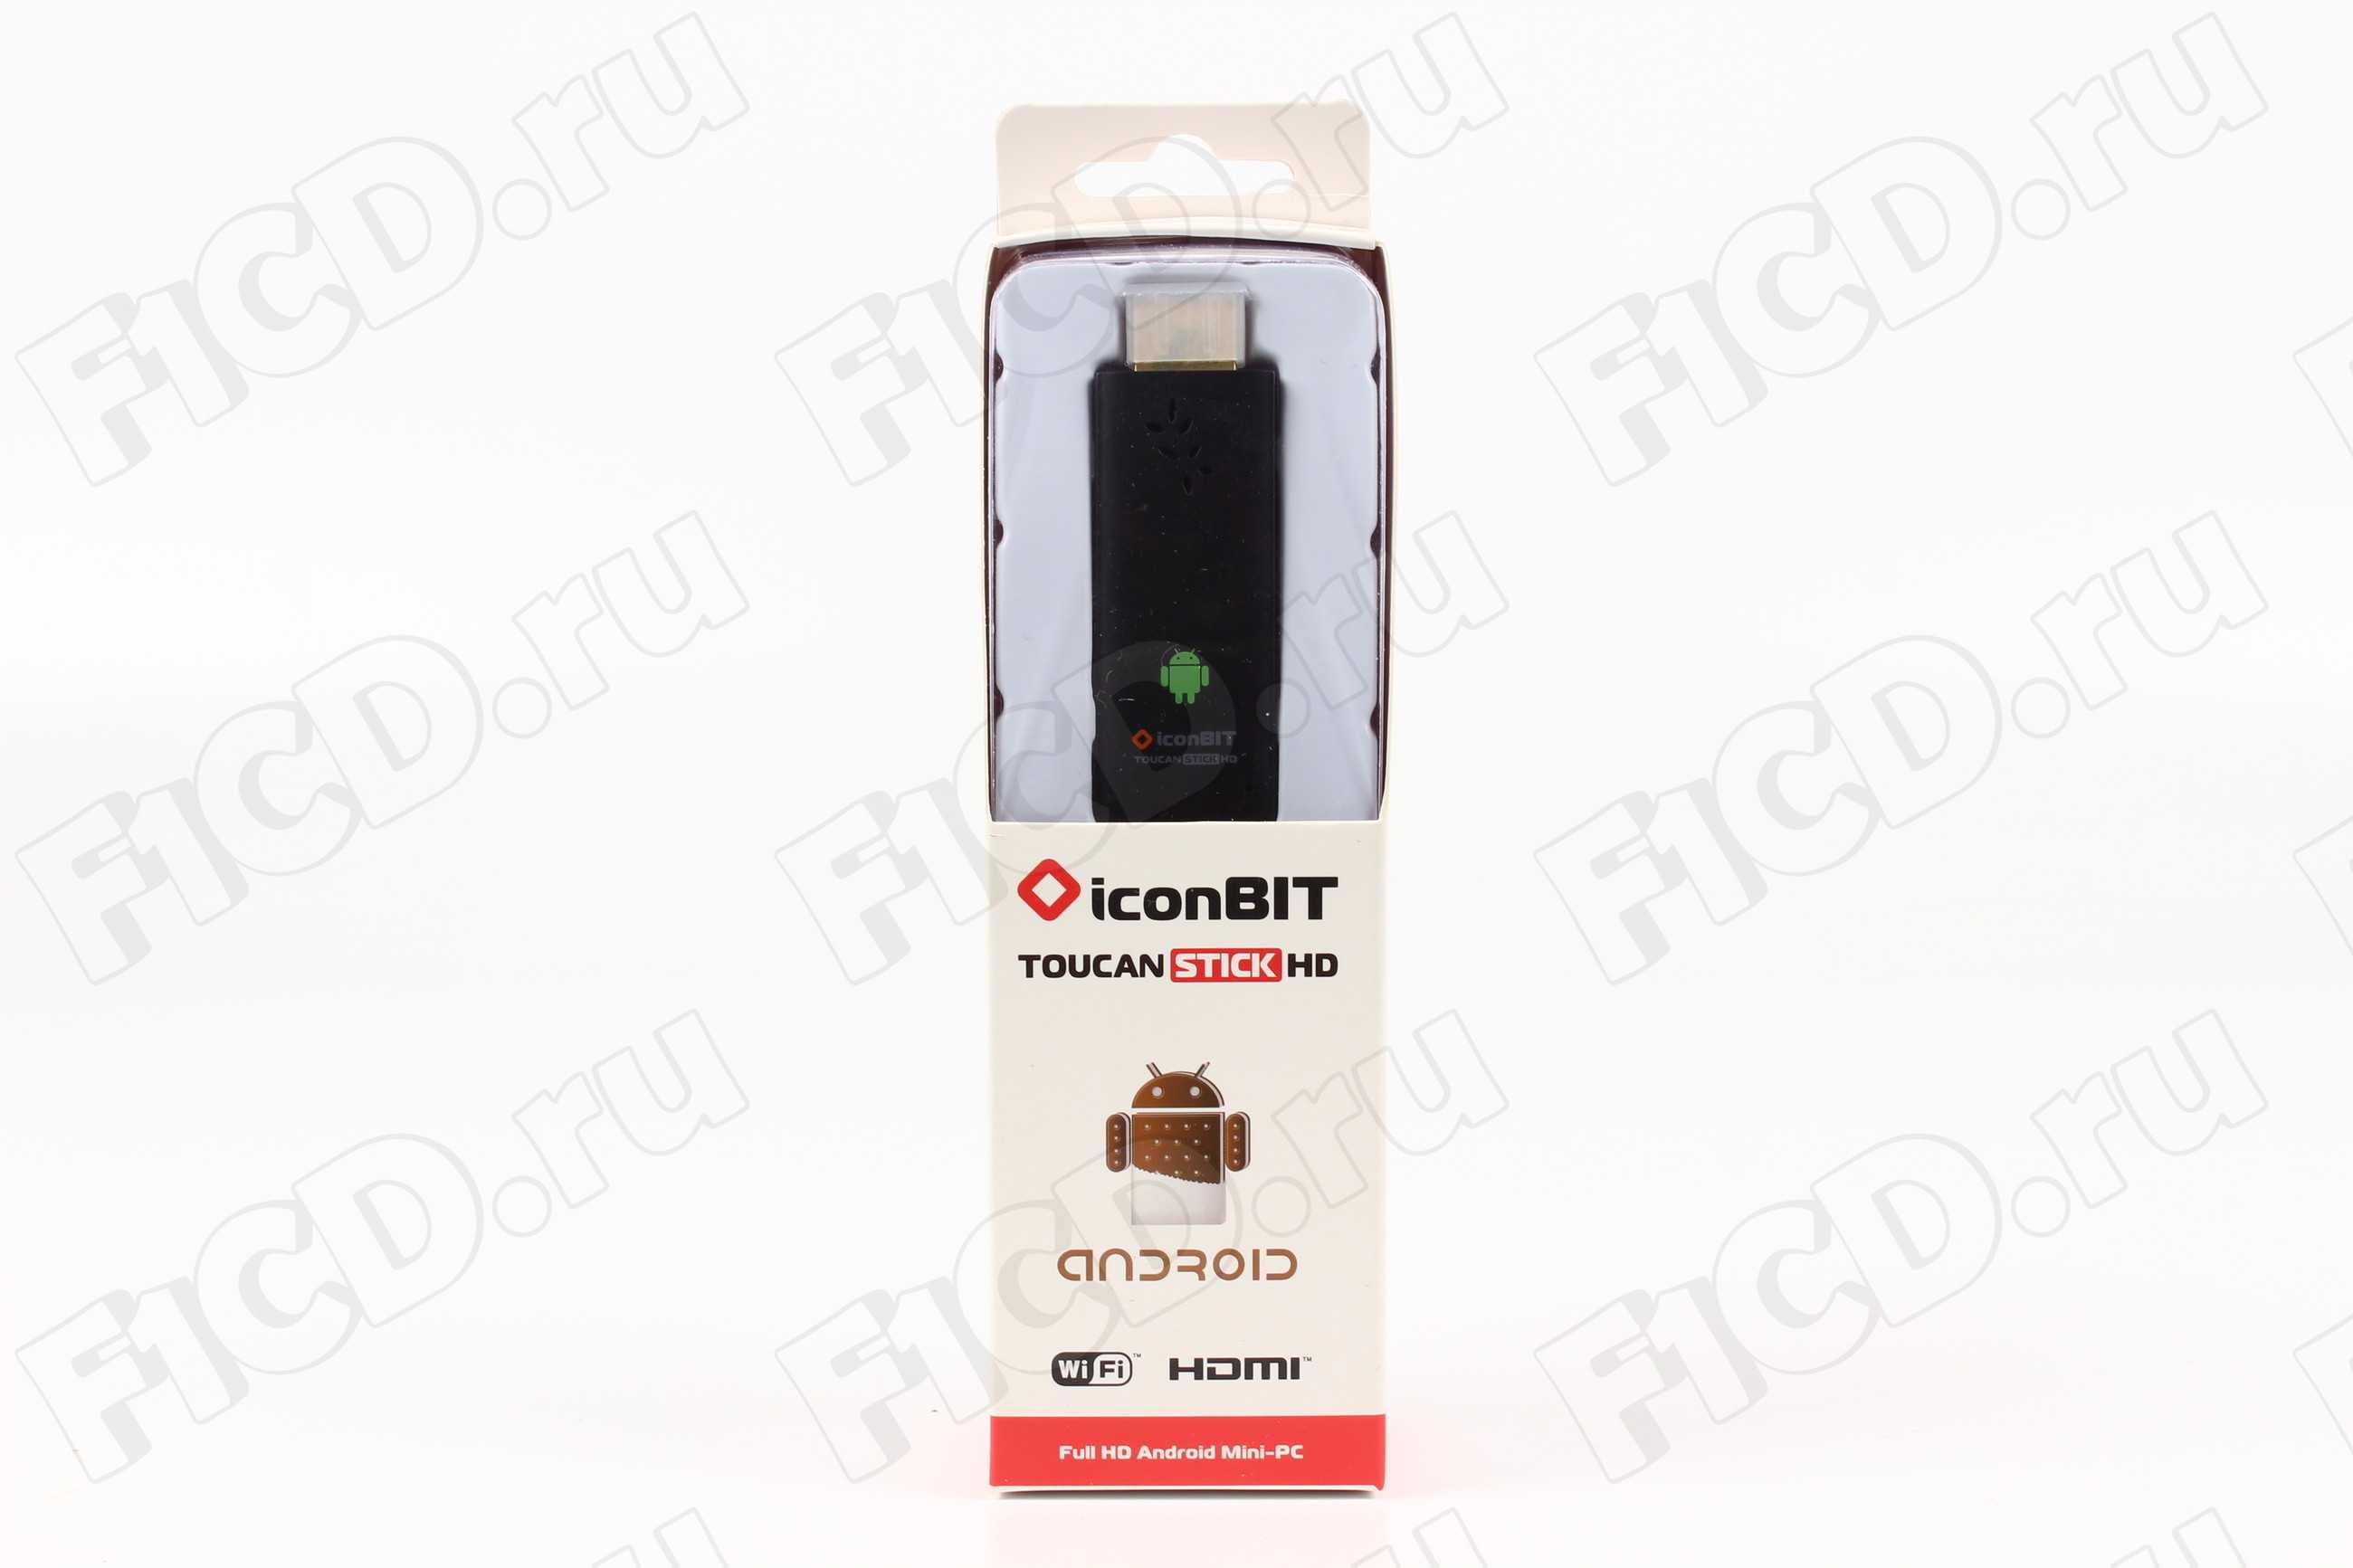 Медиаплеер iconbit toucan stick g3 mk2 — купить, цена и характеристики, отзывы